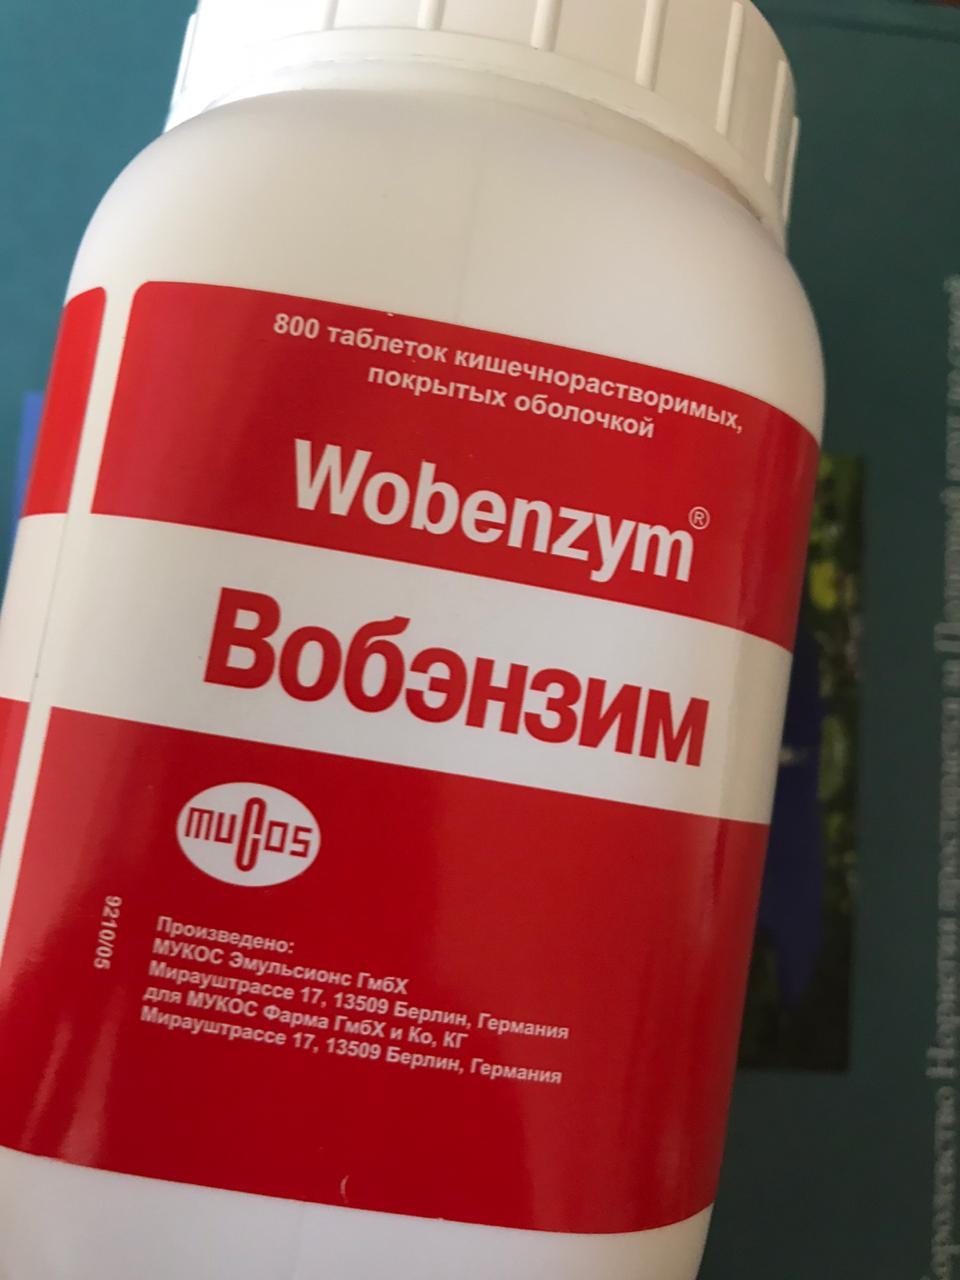 Wobenzym (Вобэнзим) - Через месяц удалось вылечить цистит и избавиться от этой болячки!